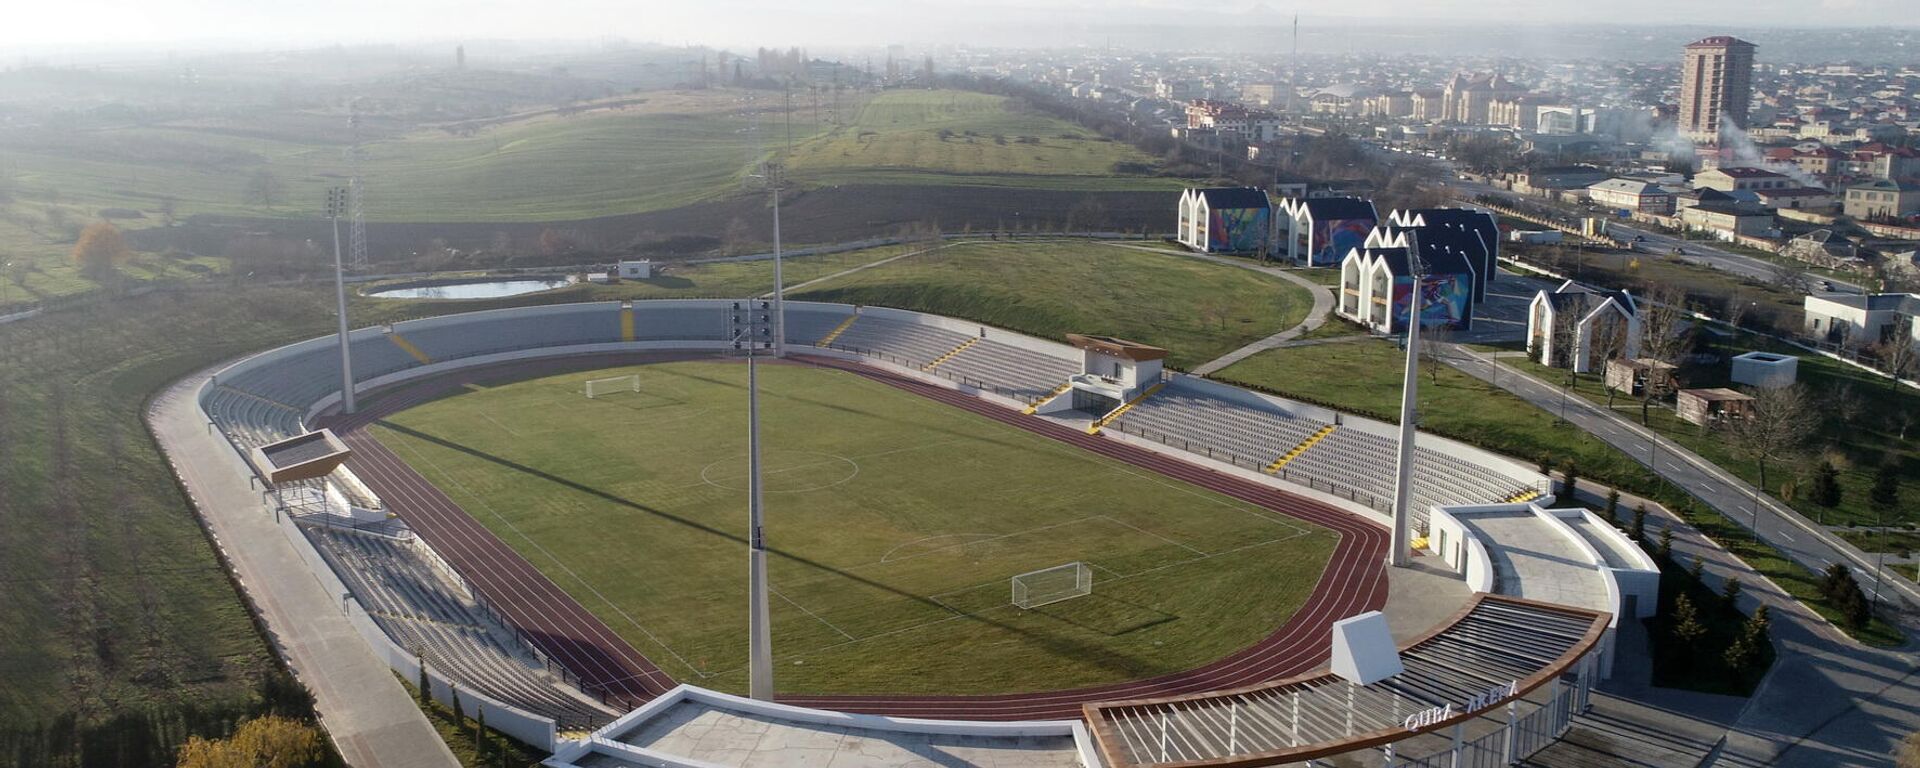 Стадион, фото из архива - Sputnik Азербайджан, 1920, 09.12.2021